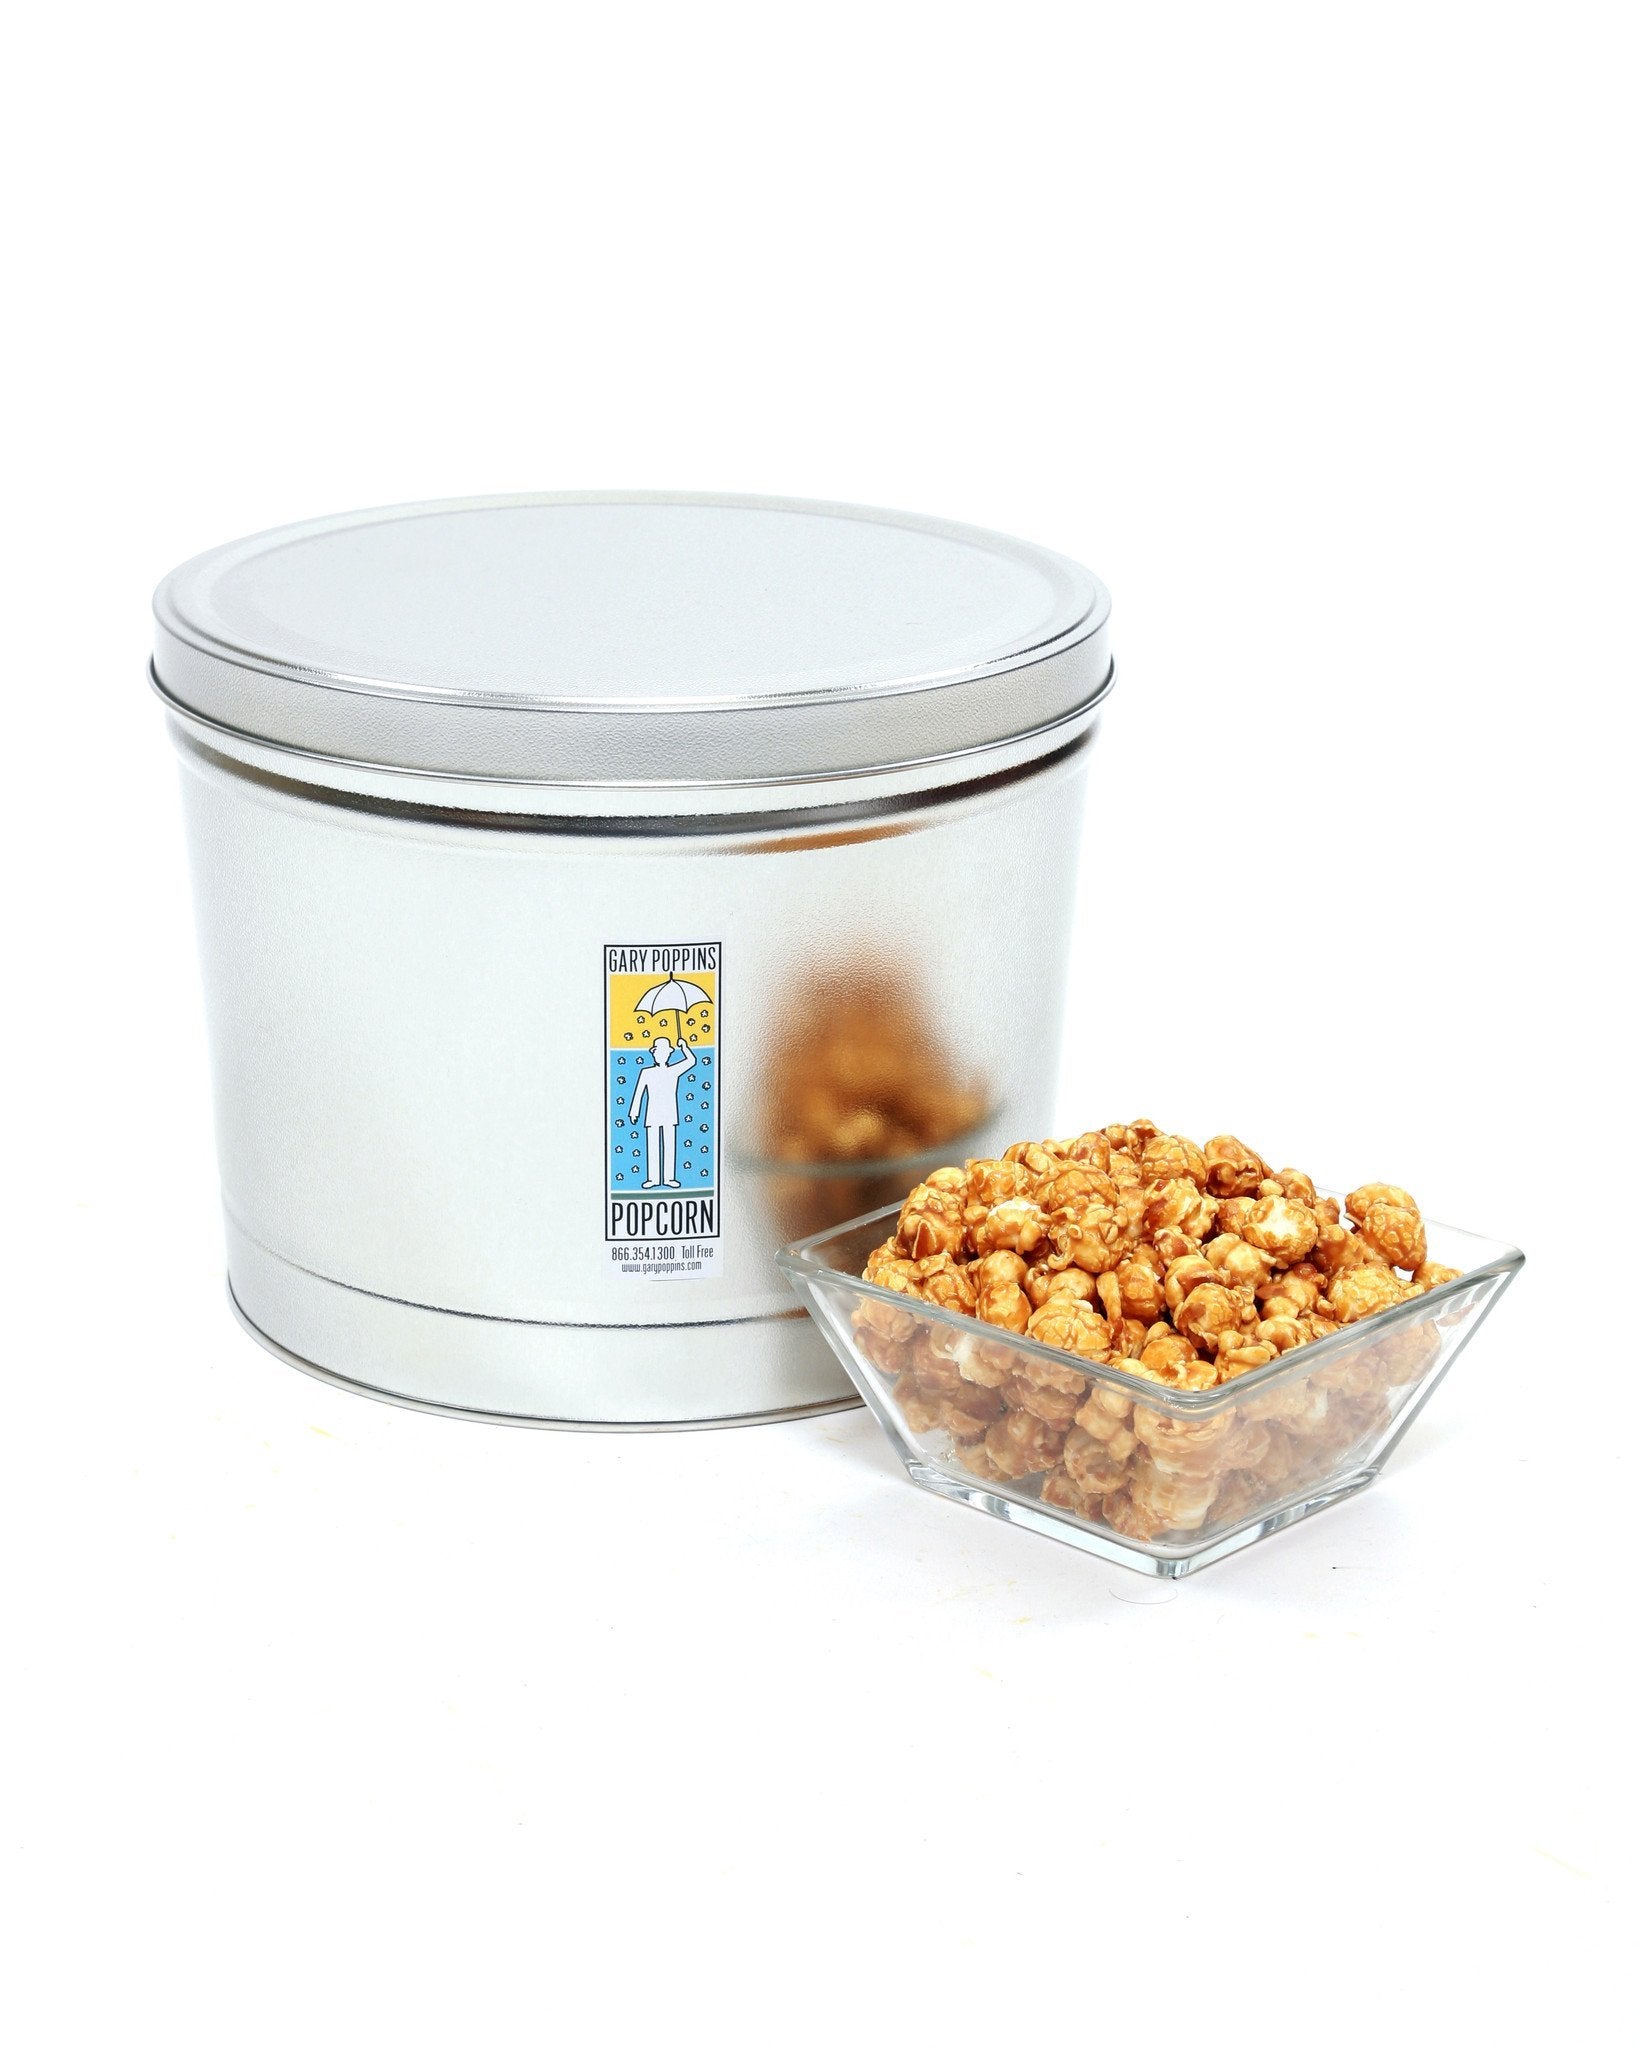 Classic Caramel - Gourmet Popcorn - 2 Gallon Tin